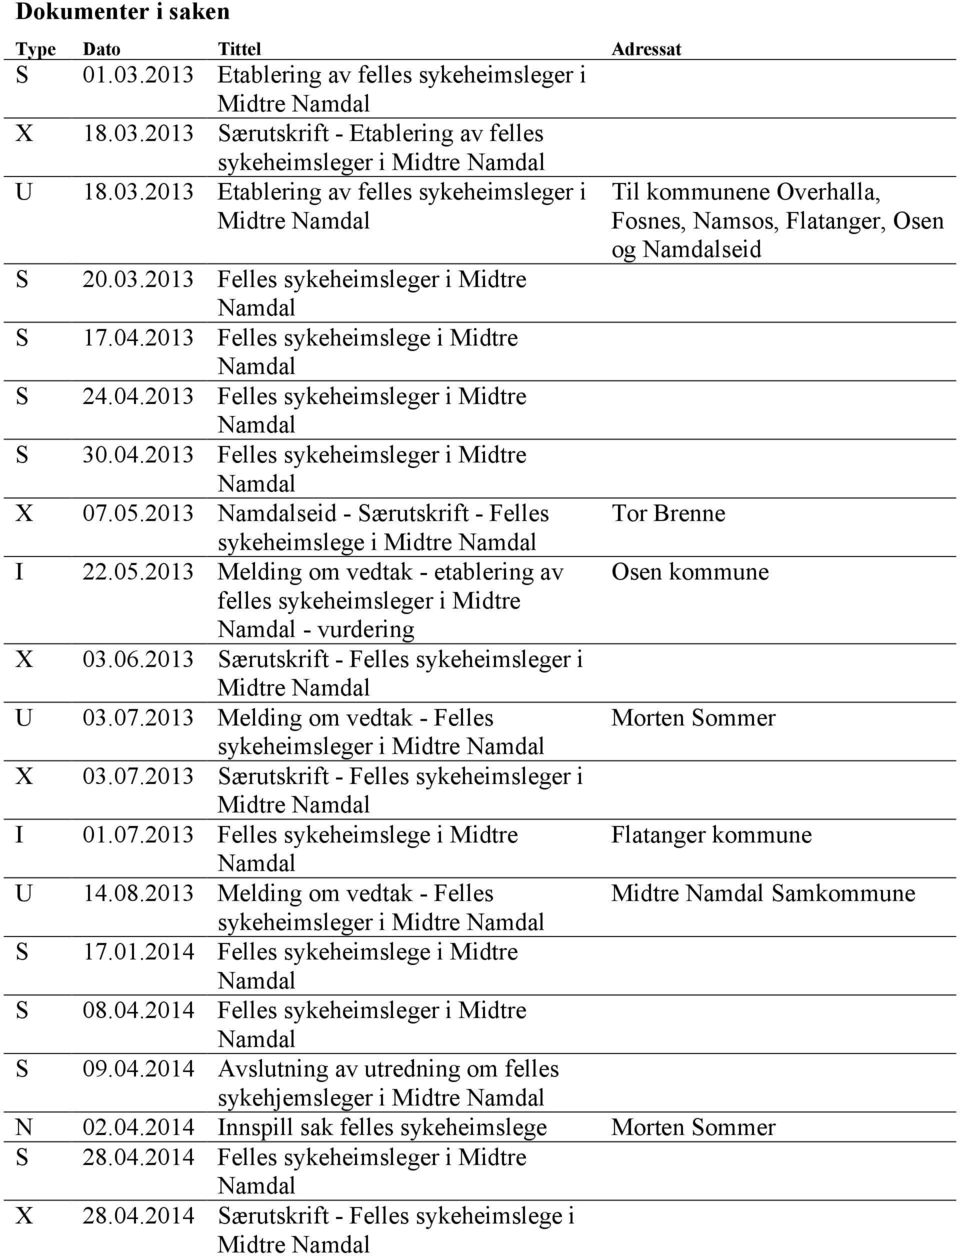 05.2013 Namdalseid - Særutskrift - Felles sykeheimslege i Midtre Namdal I 22.05.2013 Melding om vedtak - etablering av felles sykeheimsleger i Midtre Namdal - vurdering X 03.06.